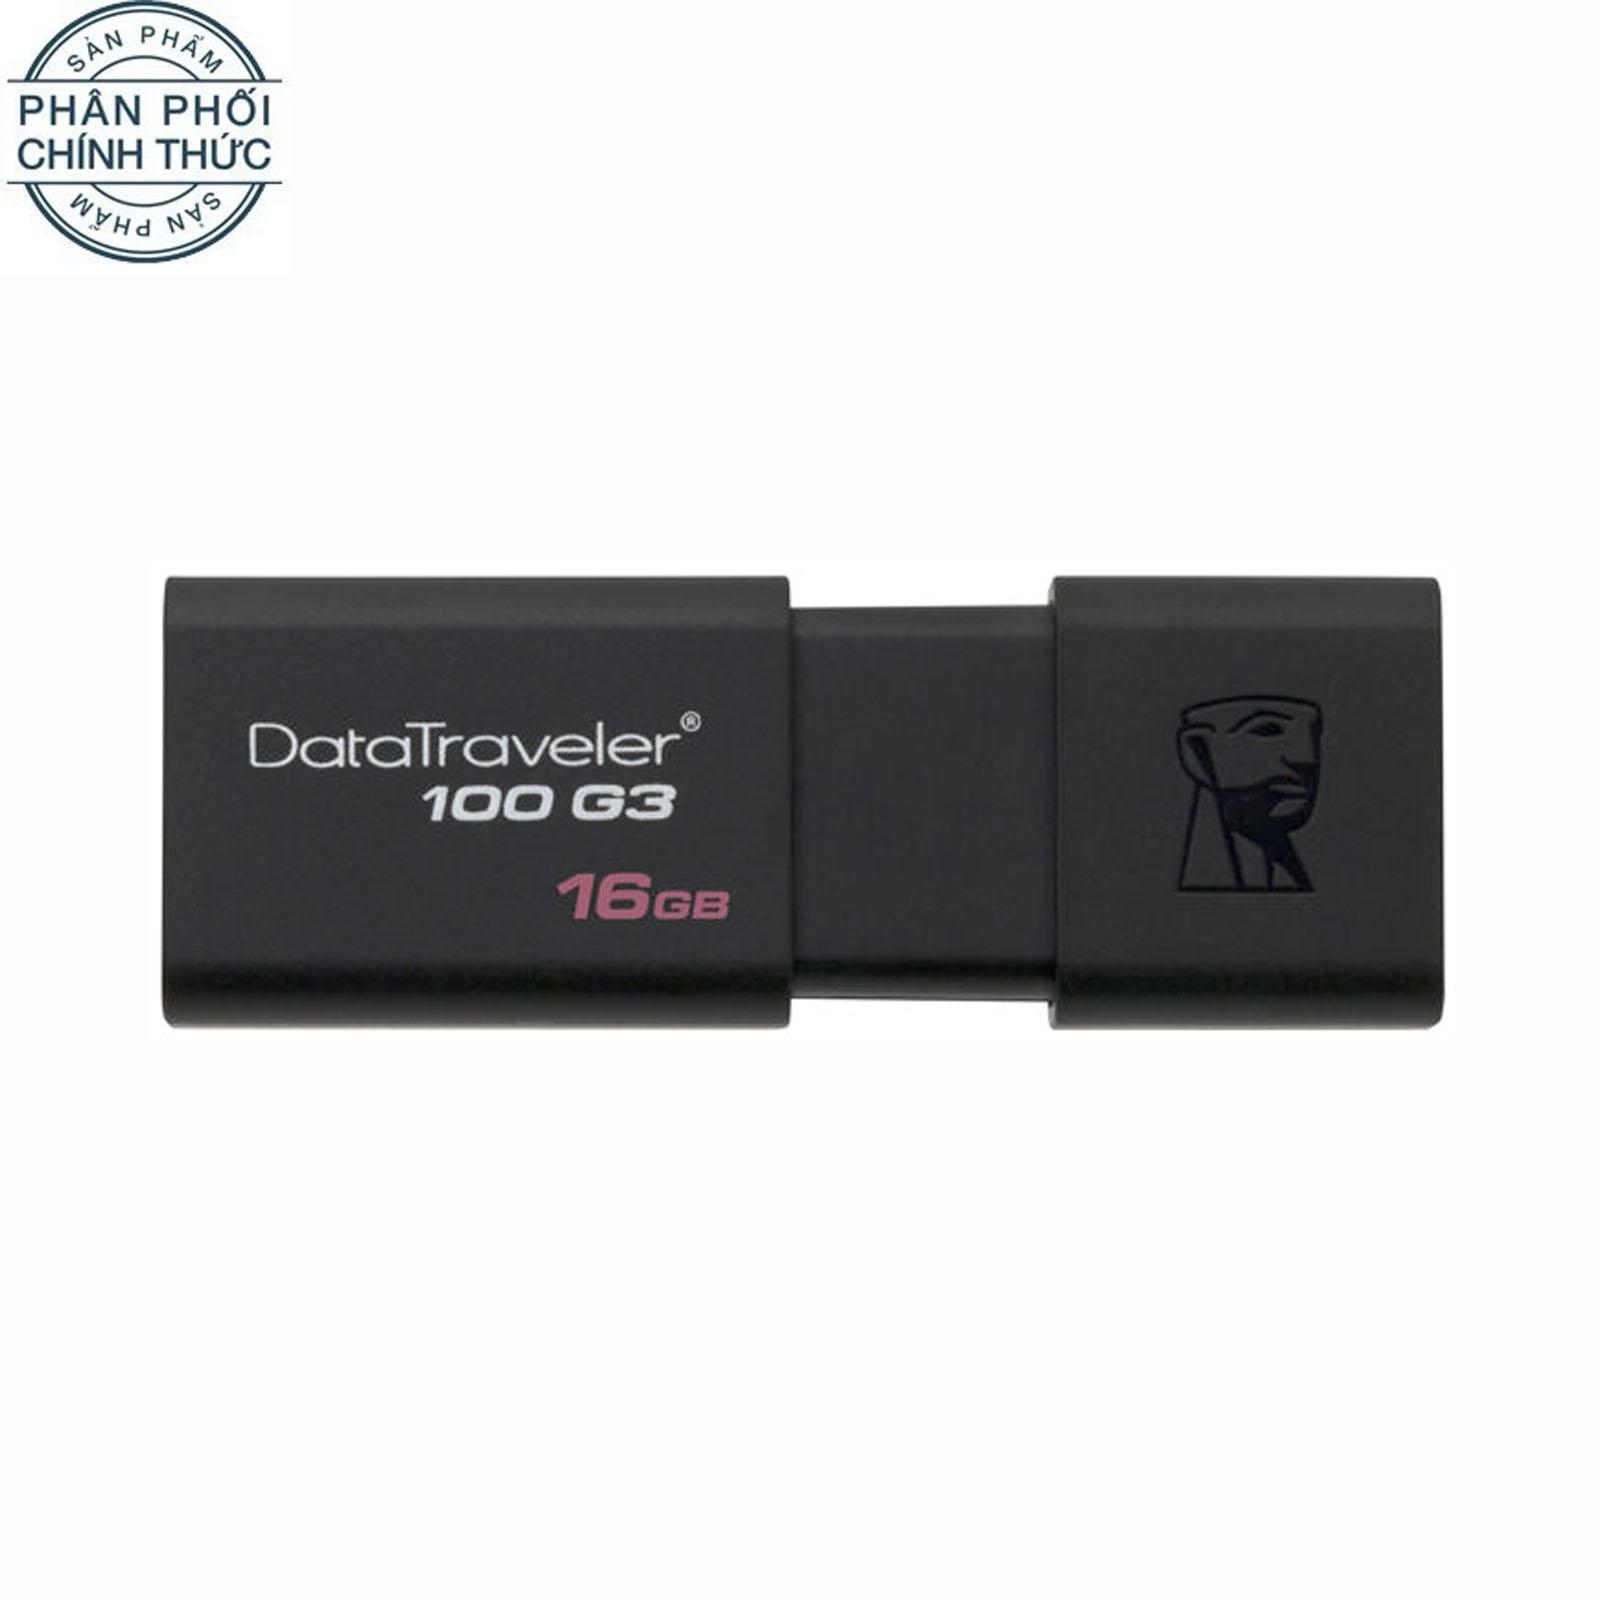 USB 3.0 16GB Kingston DataTraveler 100 G3 (Đen) – Hãng Phân phối chính thức